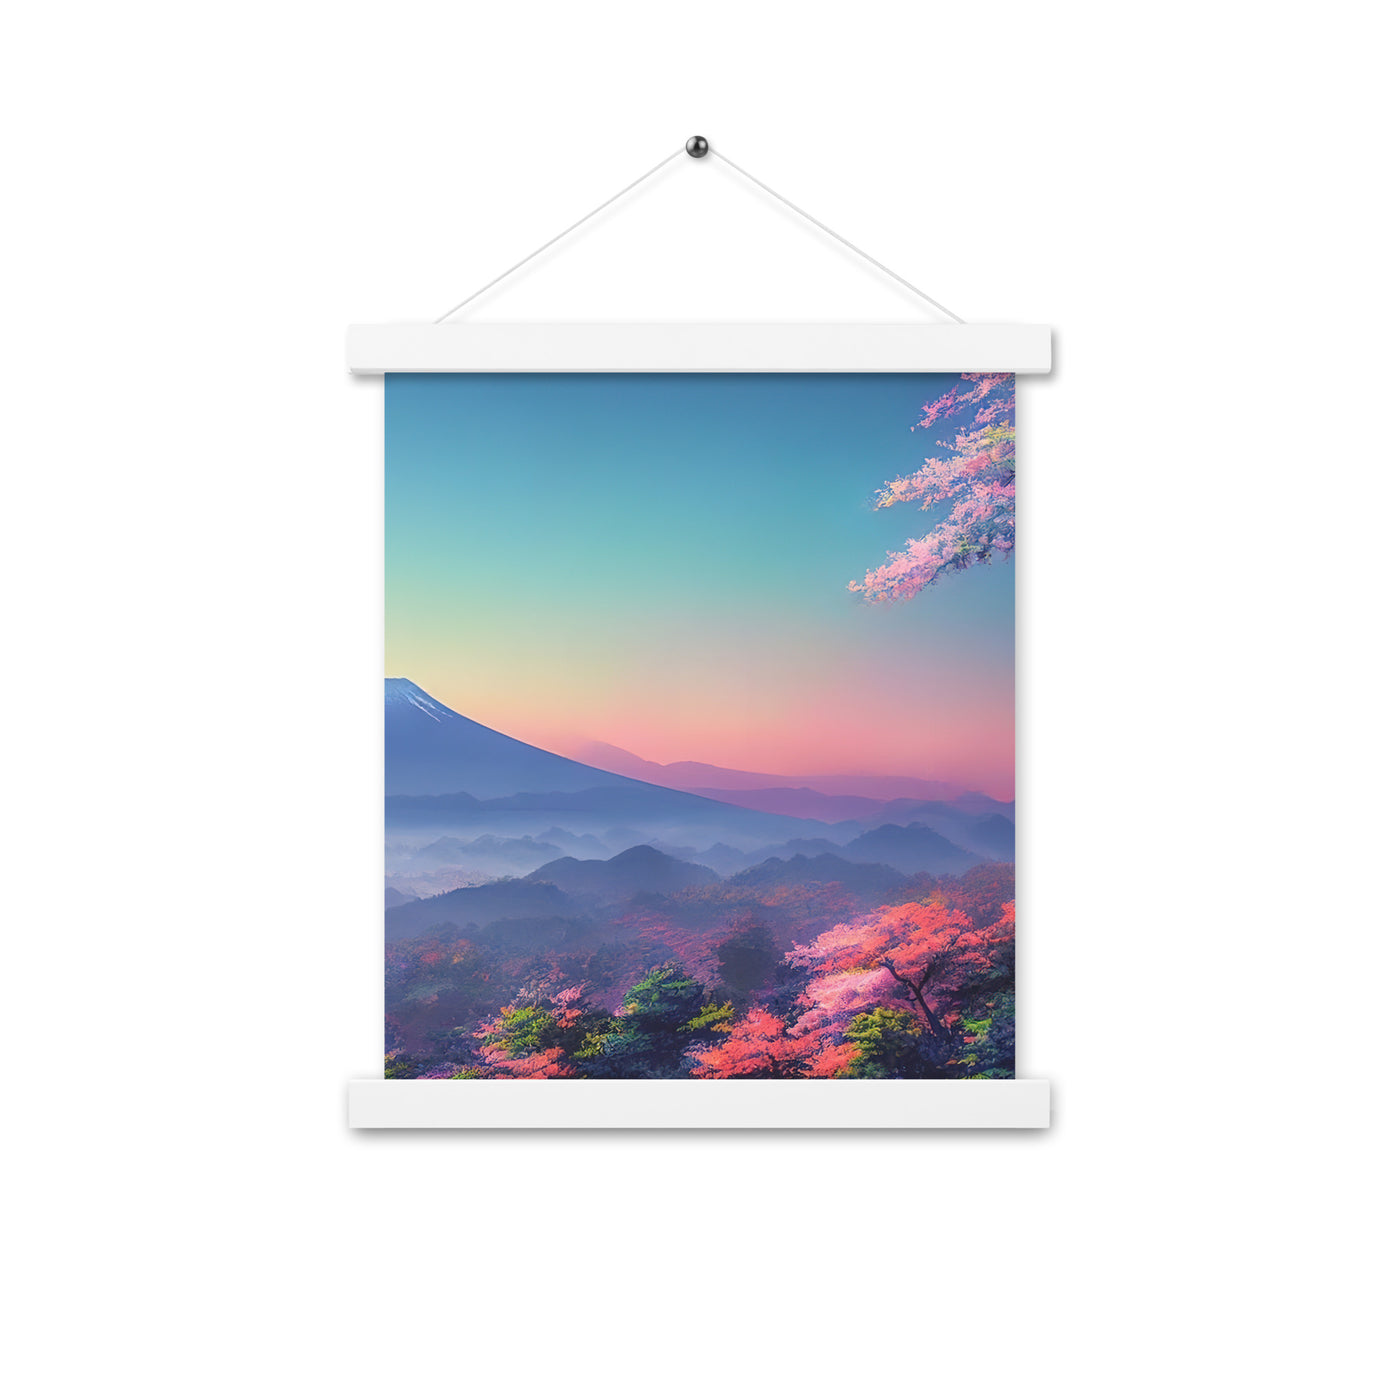 Berg und Wald mit pinken Bäumen - Landschaftsmalerei - Premium Poster mit Aufhängung berge xxx Weiß 27.9 x 35.6 cm